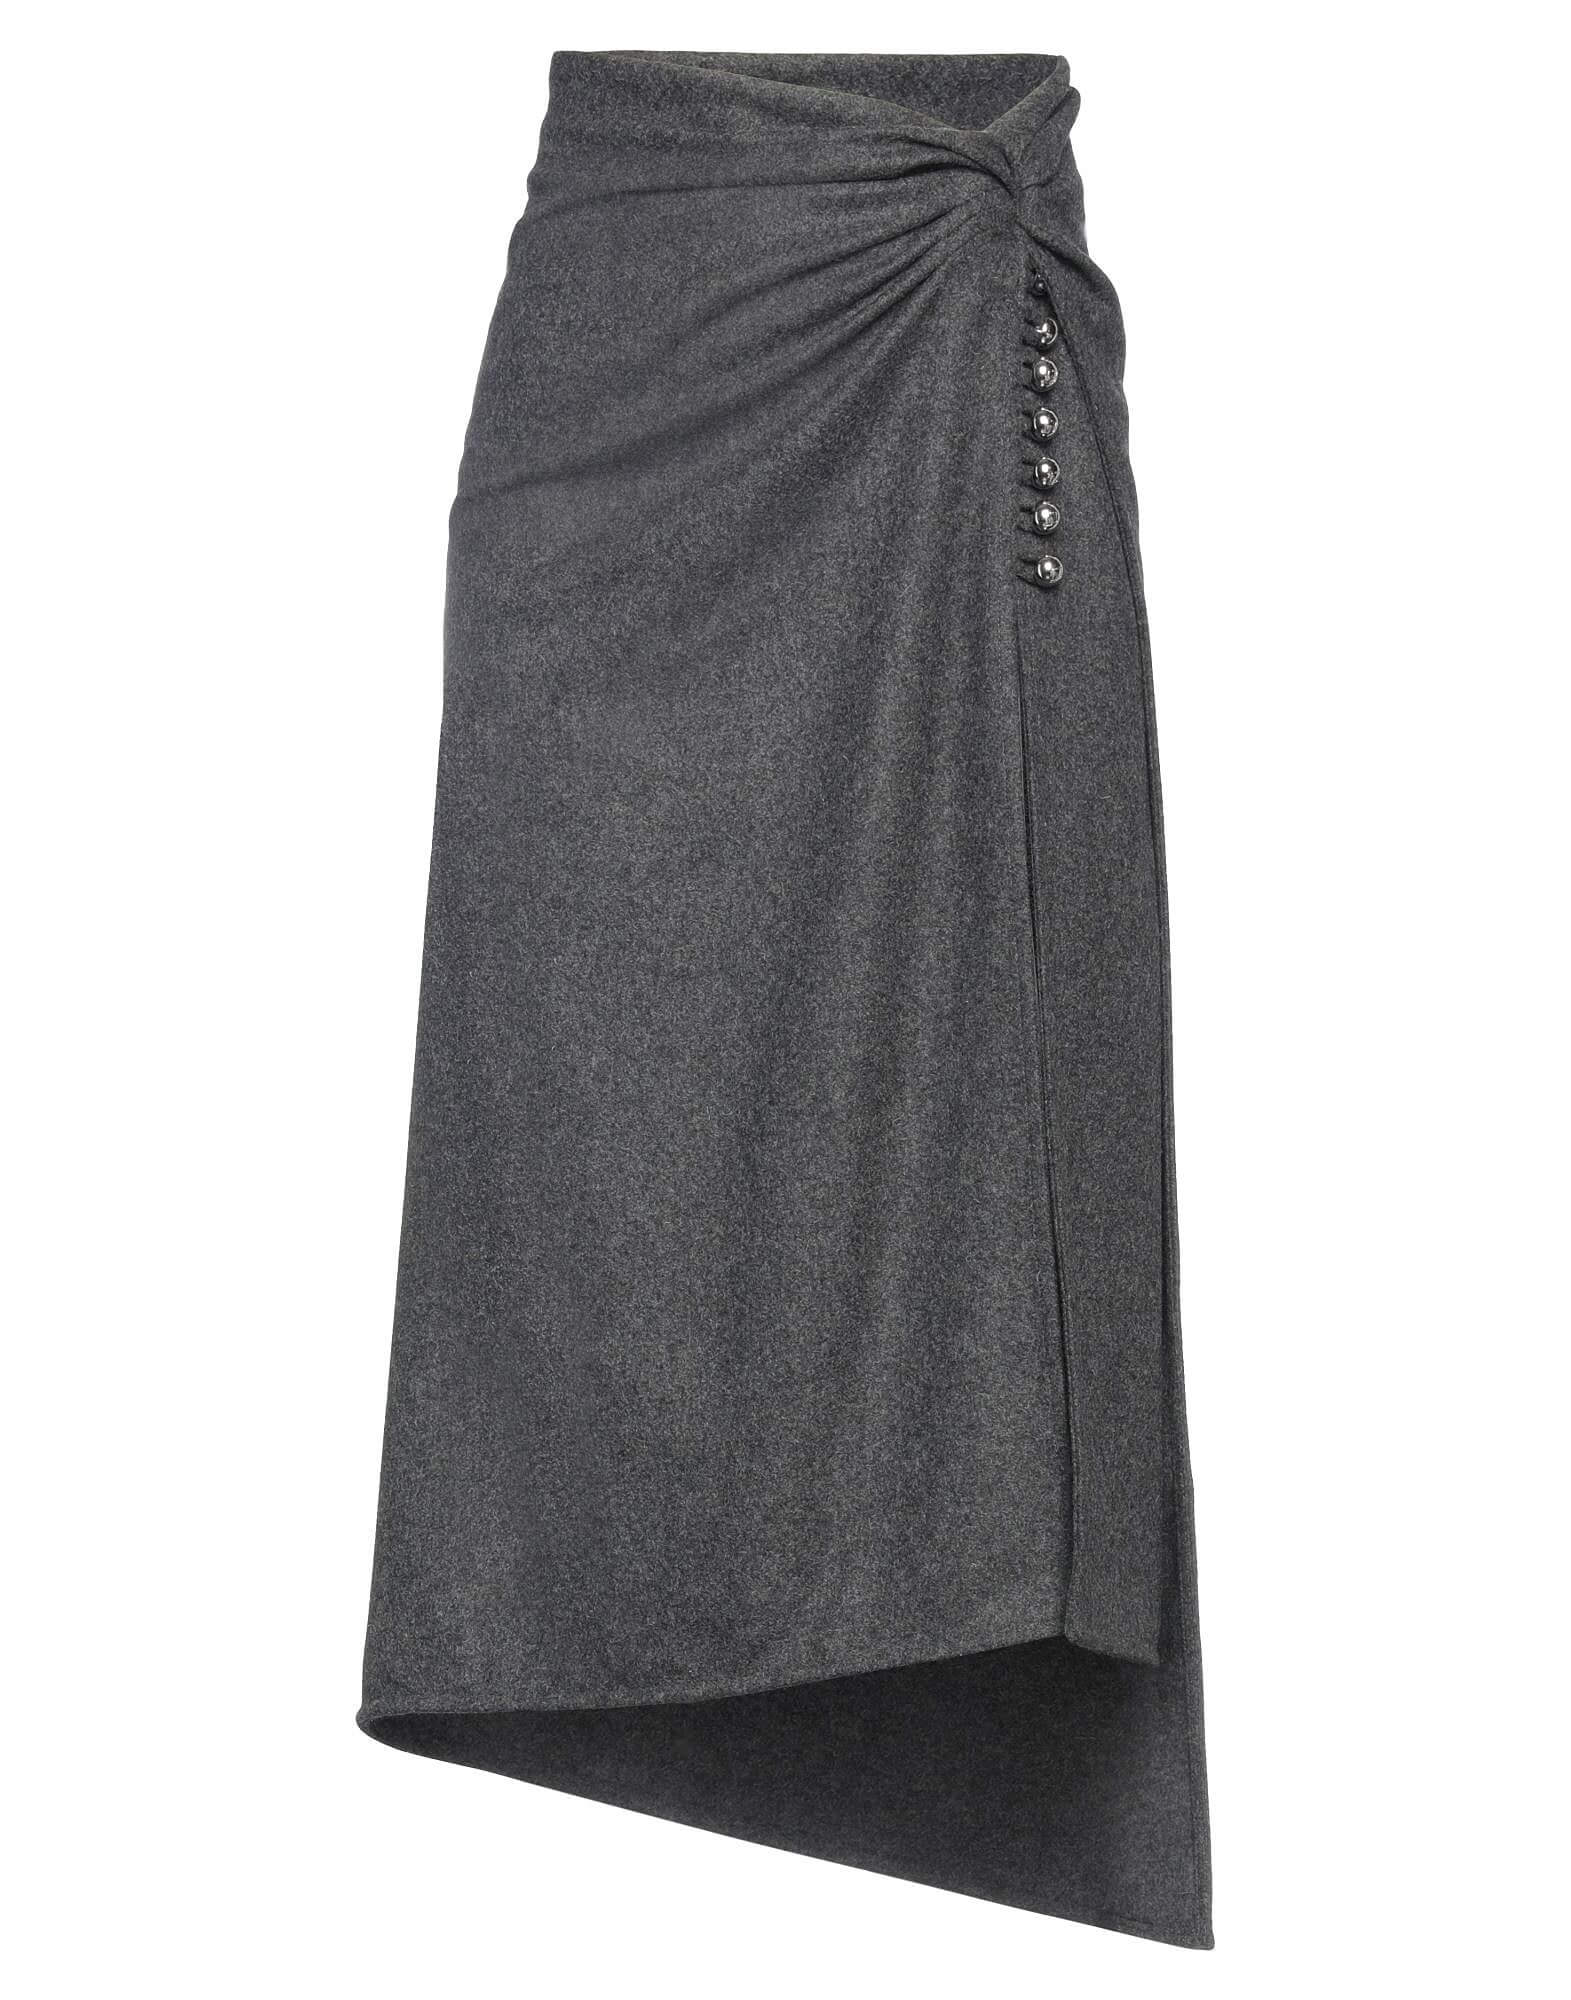 Юбка Paco Rabanne Midi, серый юбка карандаш cepheya миди размер 46 серый